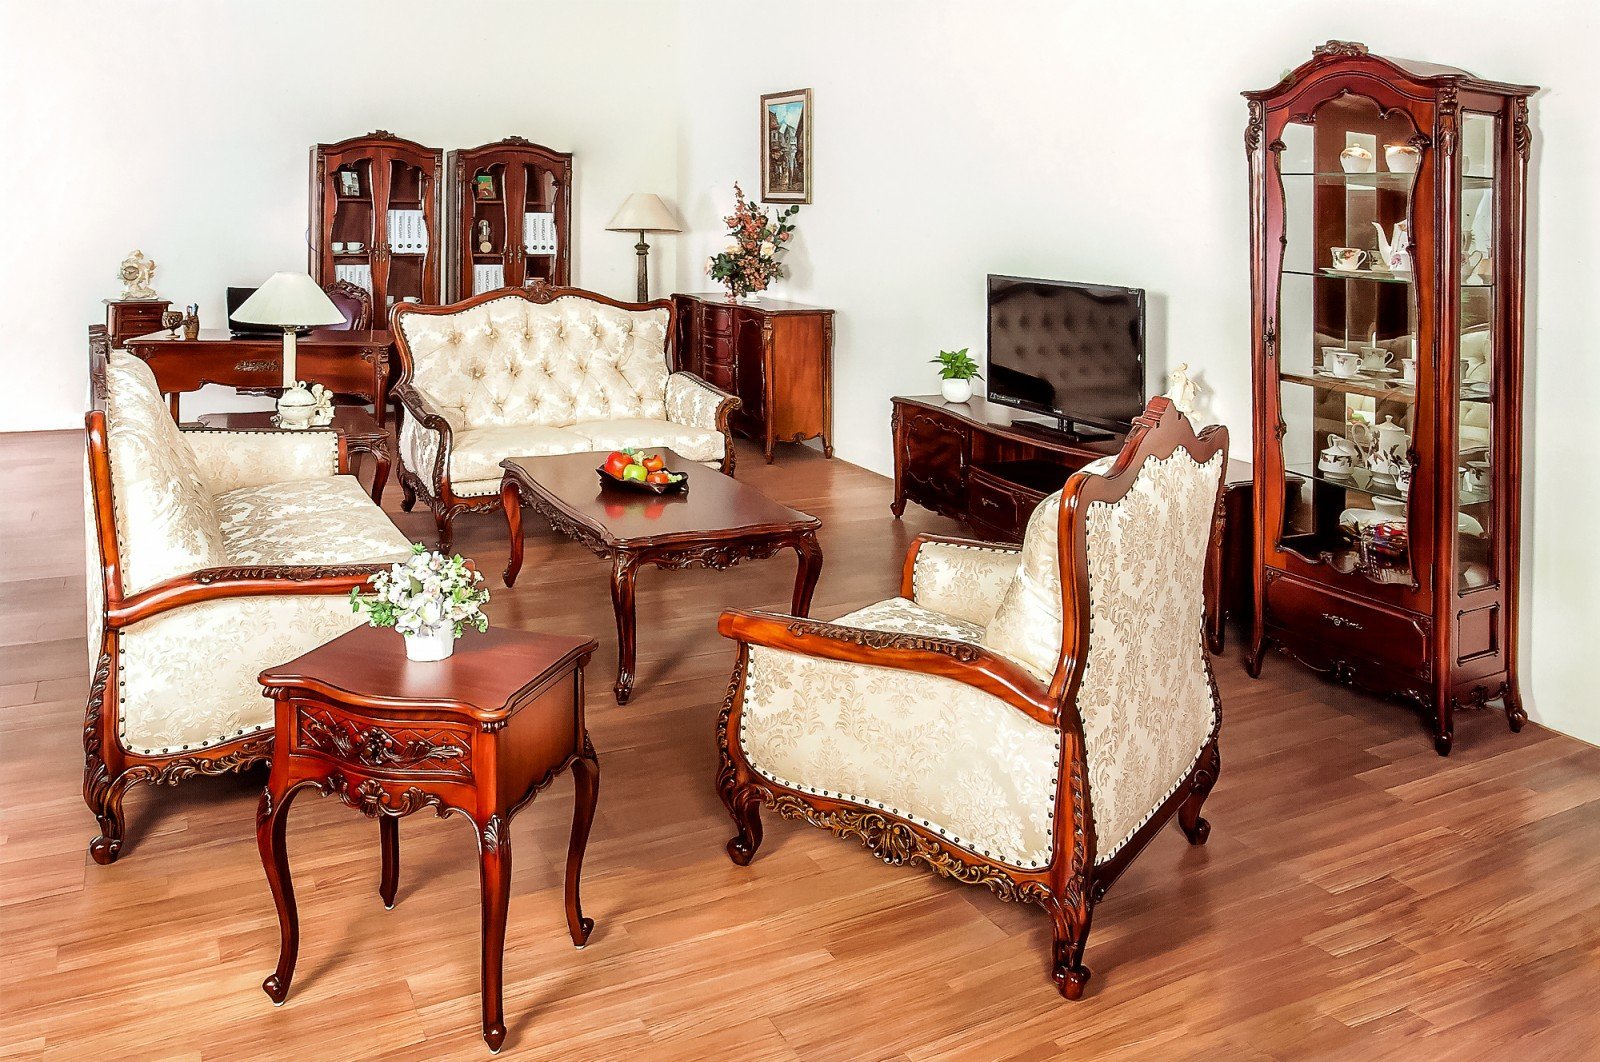 Малазийская мебель. Румынская мебель красное дерево. Румынская мебель Elysee Simex. Румынская мебель испанский Ренессанс. Мебель из красного дерева.